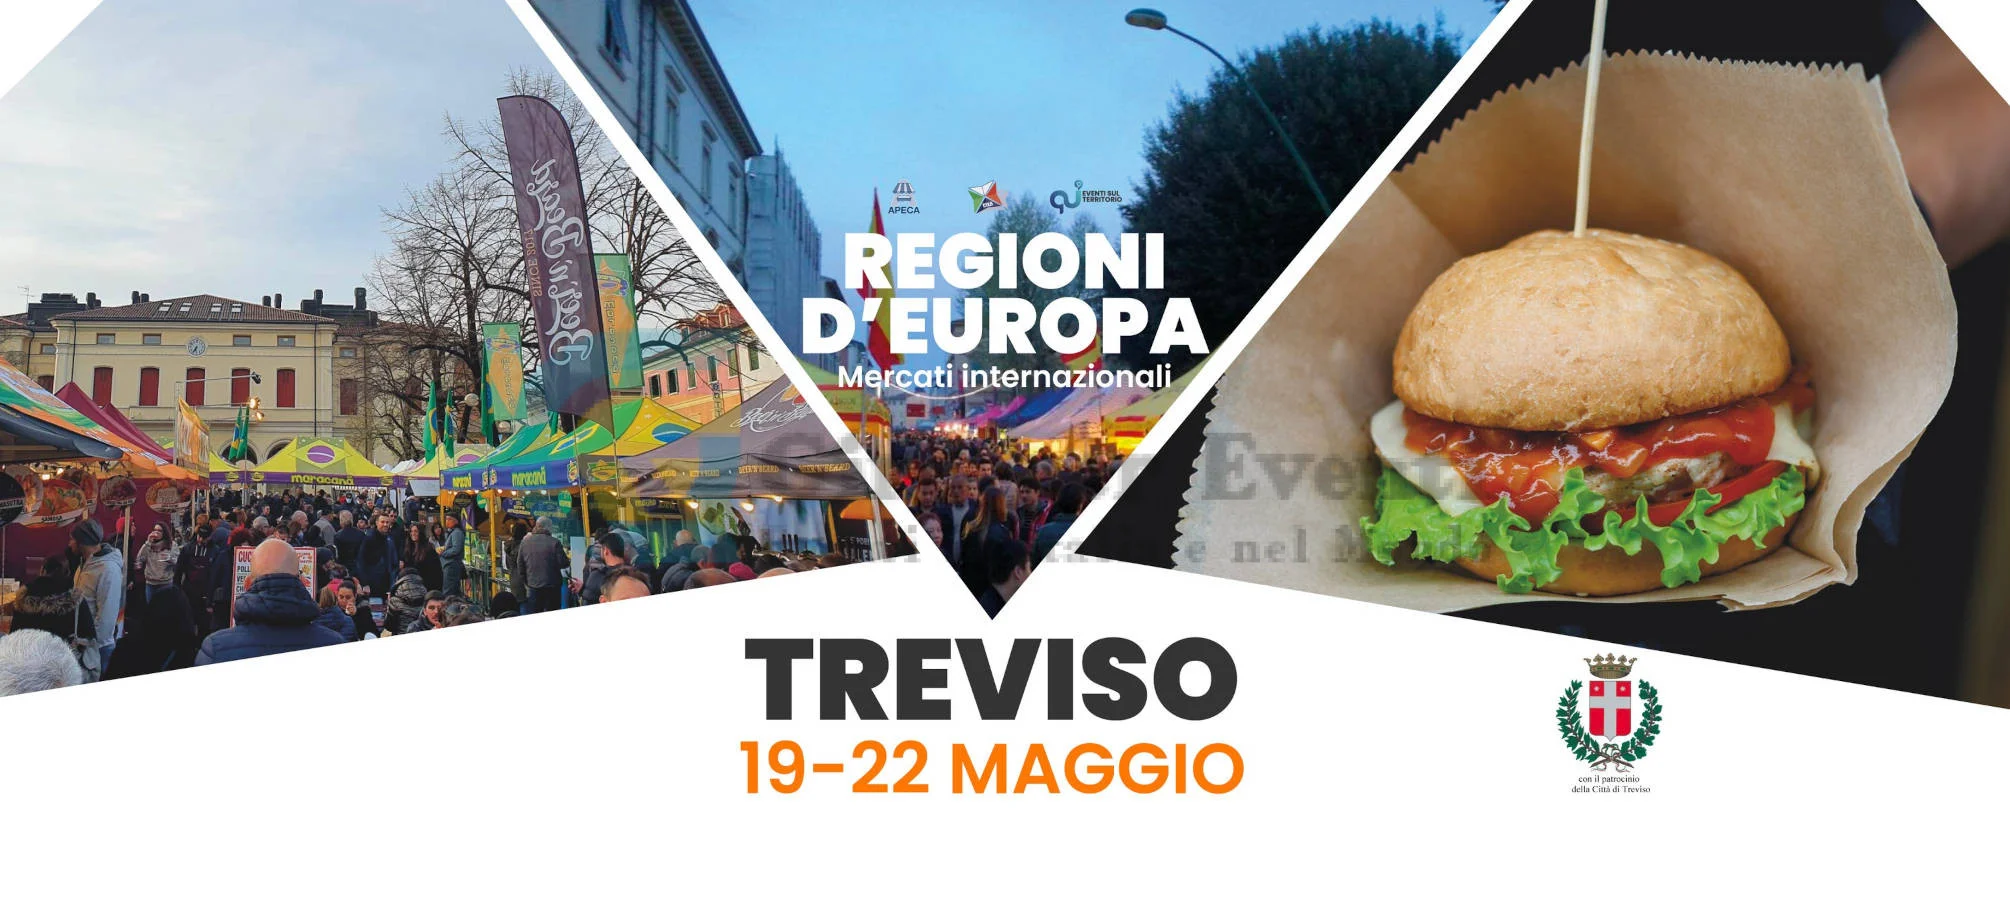 Mercato Europeo - Regioni d'Europa a Treviso